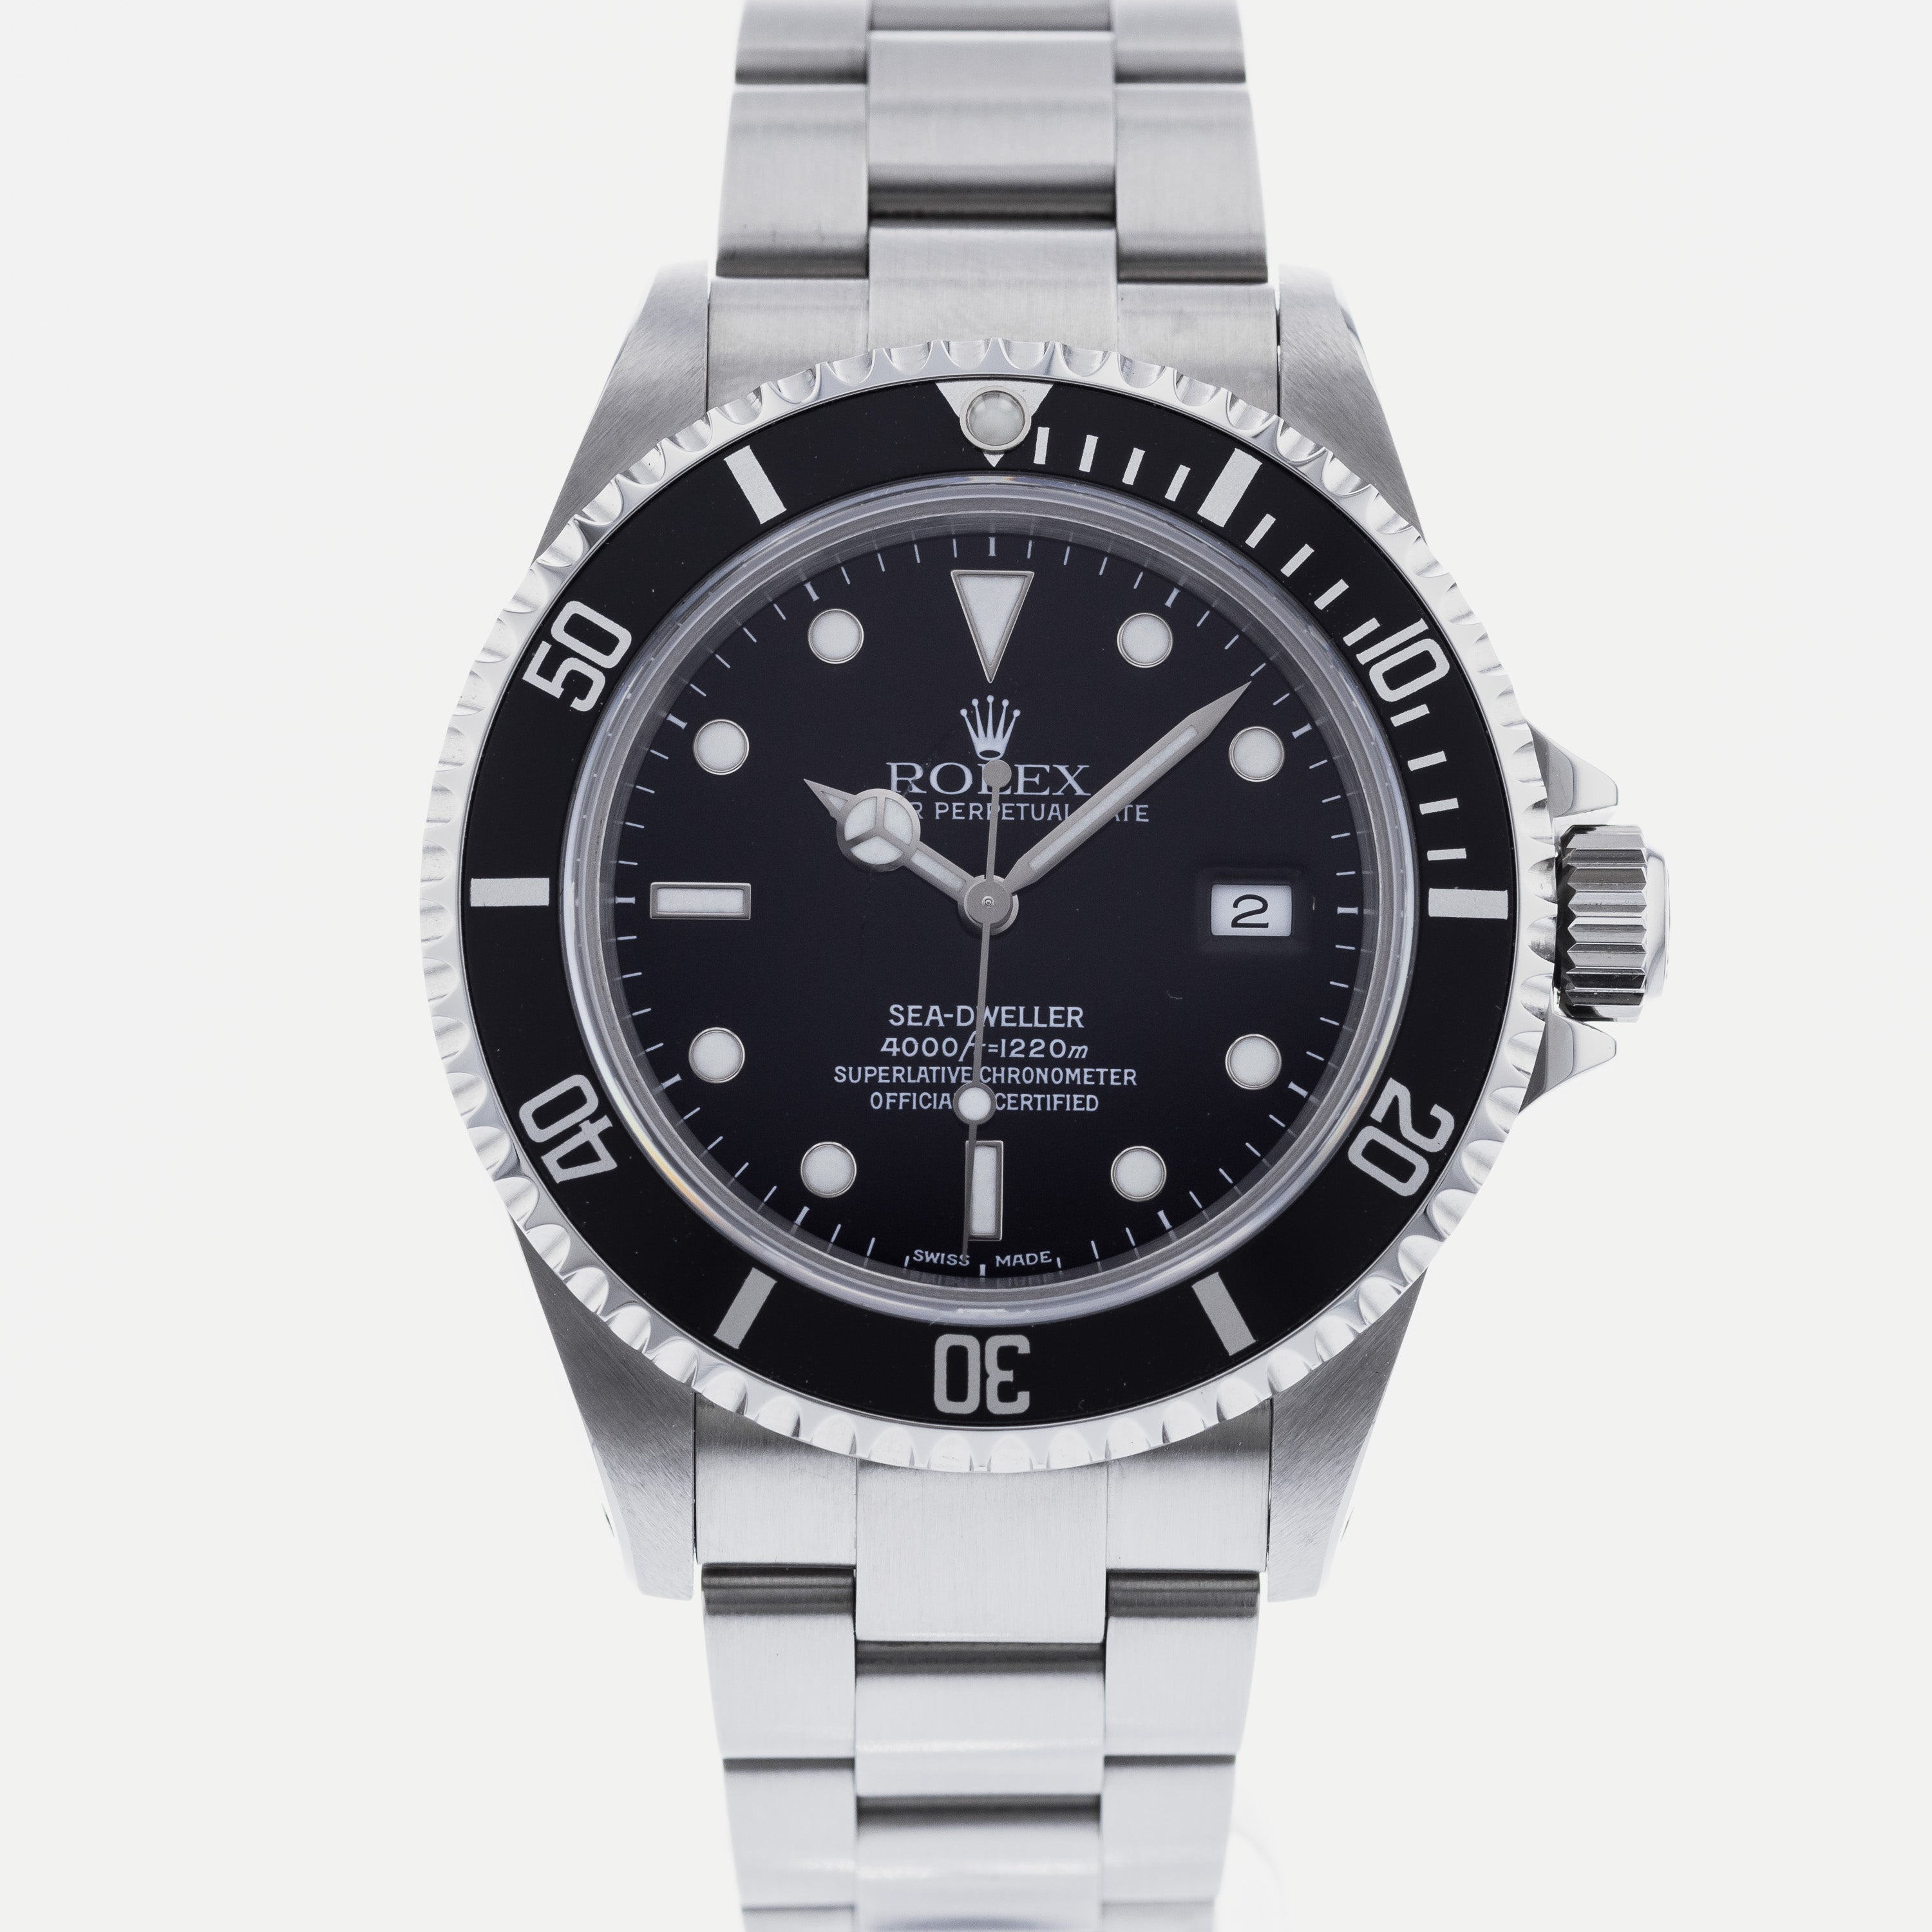 Af Gud debitor Tag fat Authentic Used Rolex Sea-Dweller 16600 Watch (10-10-ROL-4Y13PM)